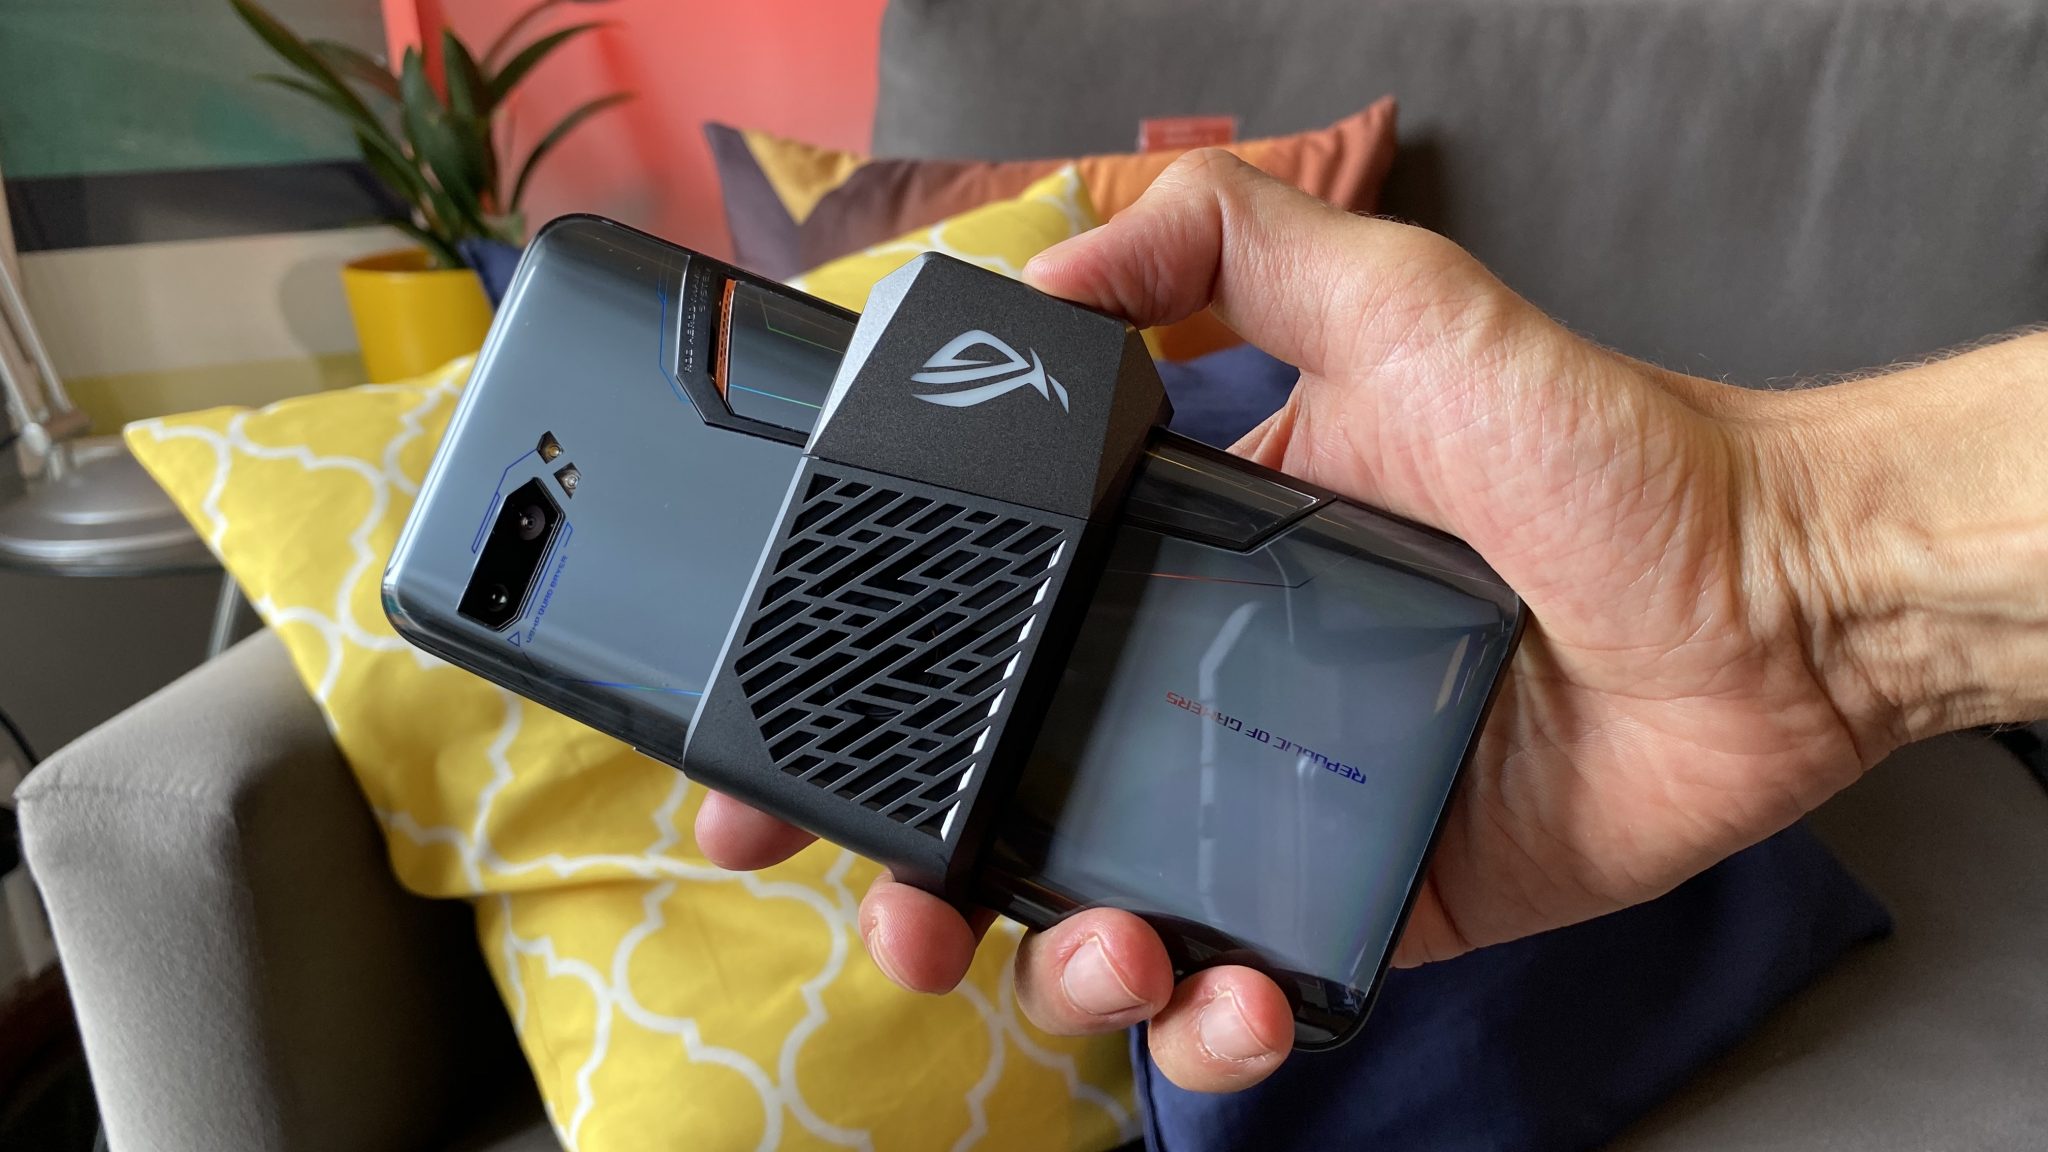 يعد ROG Phone 2 أكثر من مجرد هاتف ذكي رائع للاعبين 53